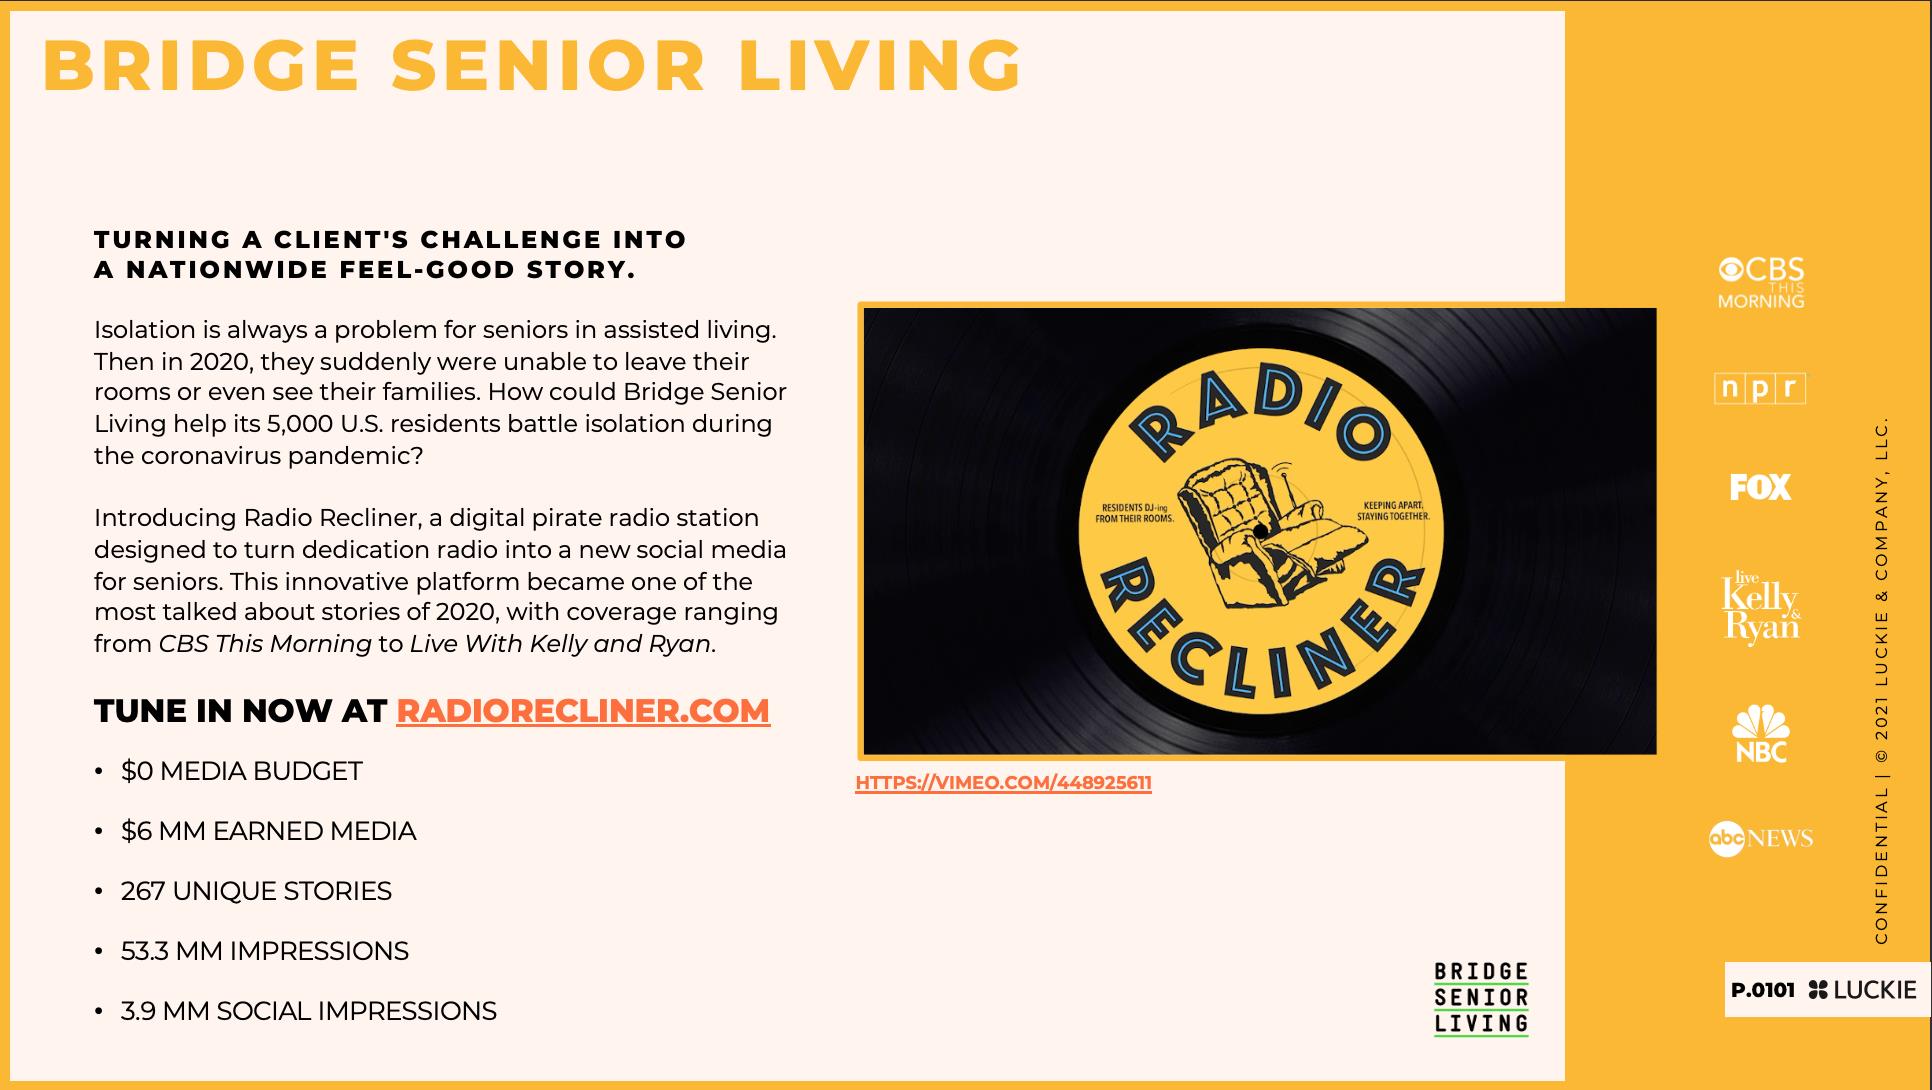 Bridge Senior Living "Radio Recliner" Case Study 